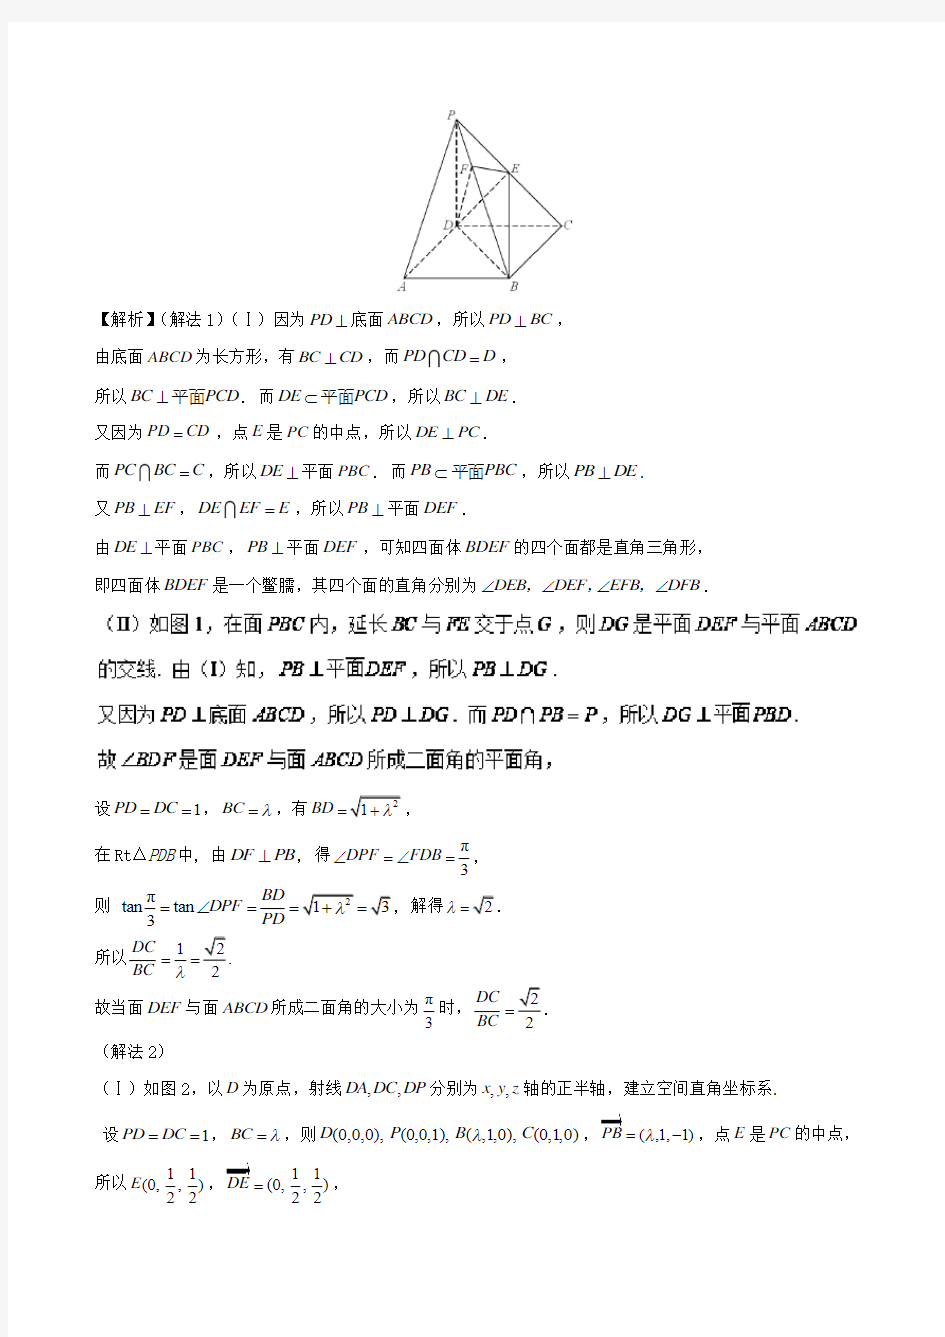 高考数学文化题目的命制背景-立体几何中的数学文化